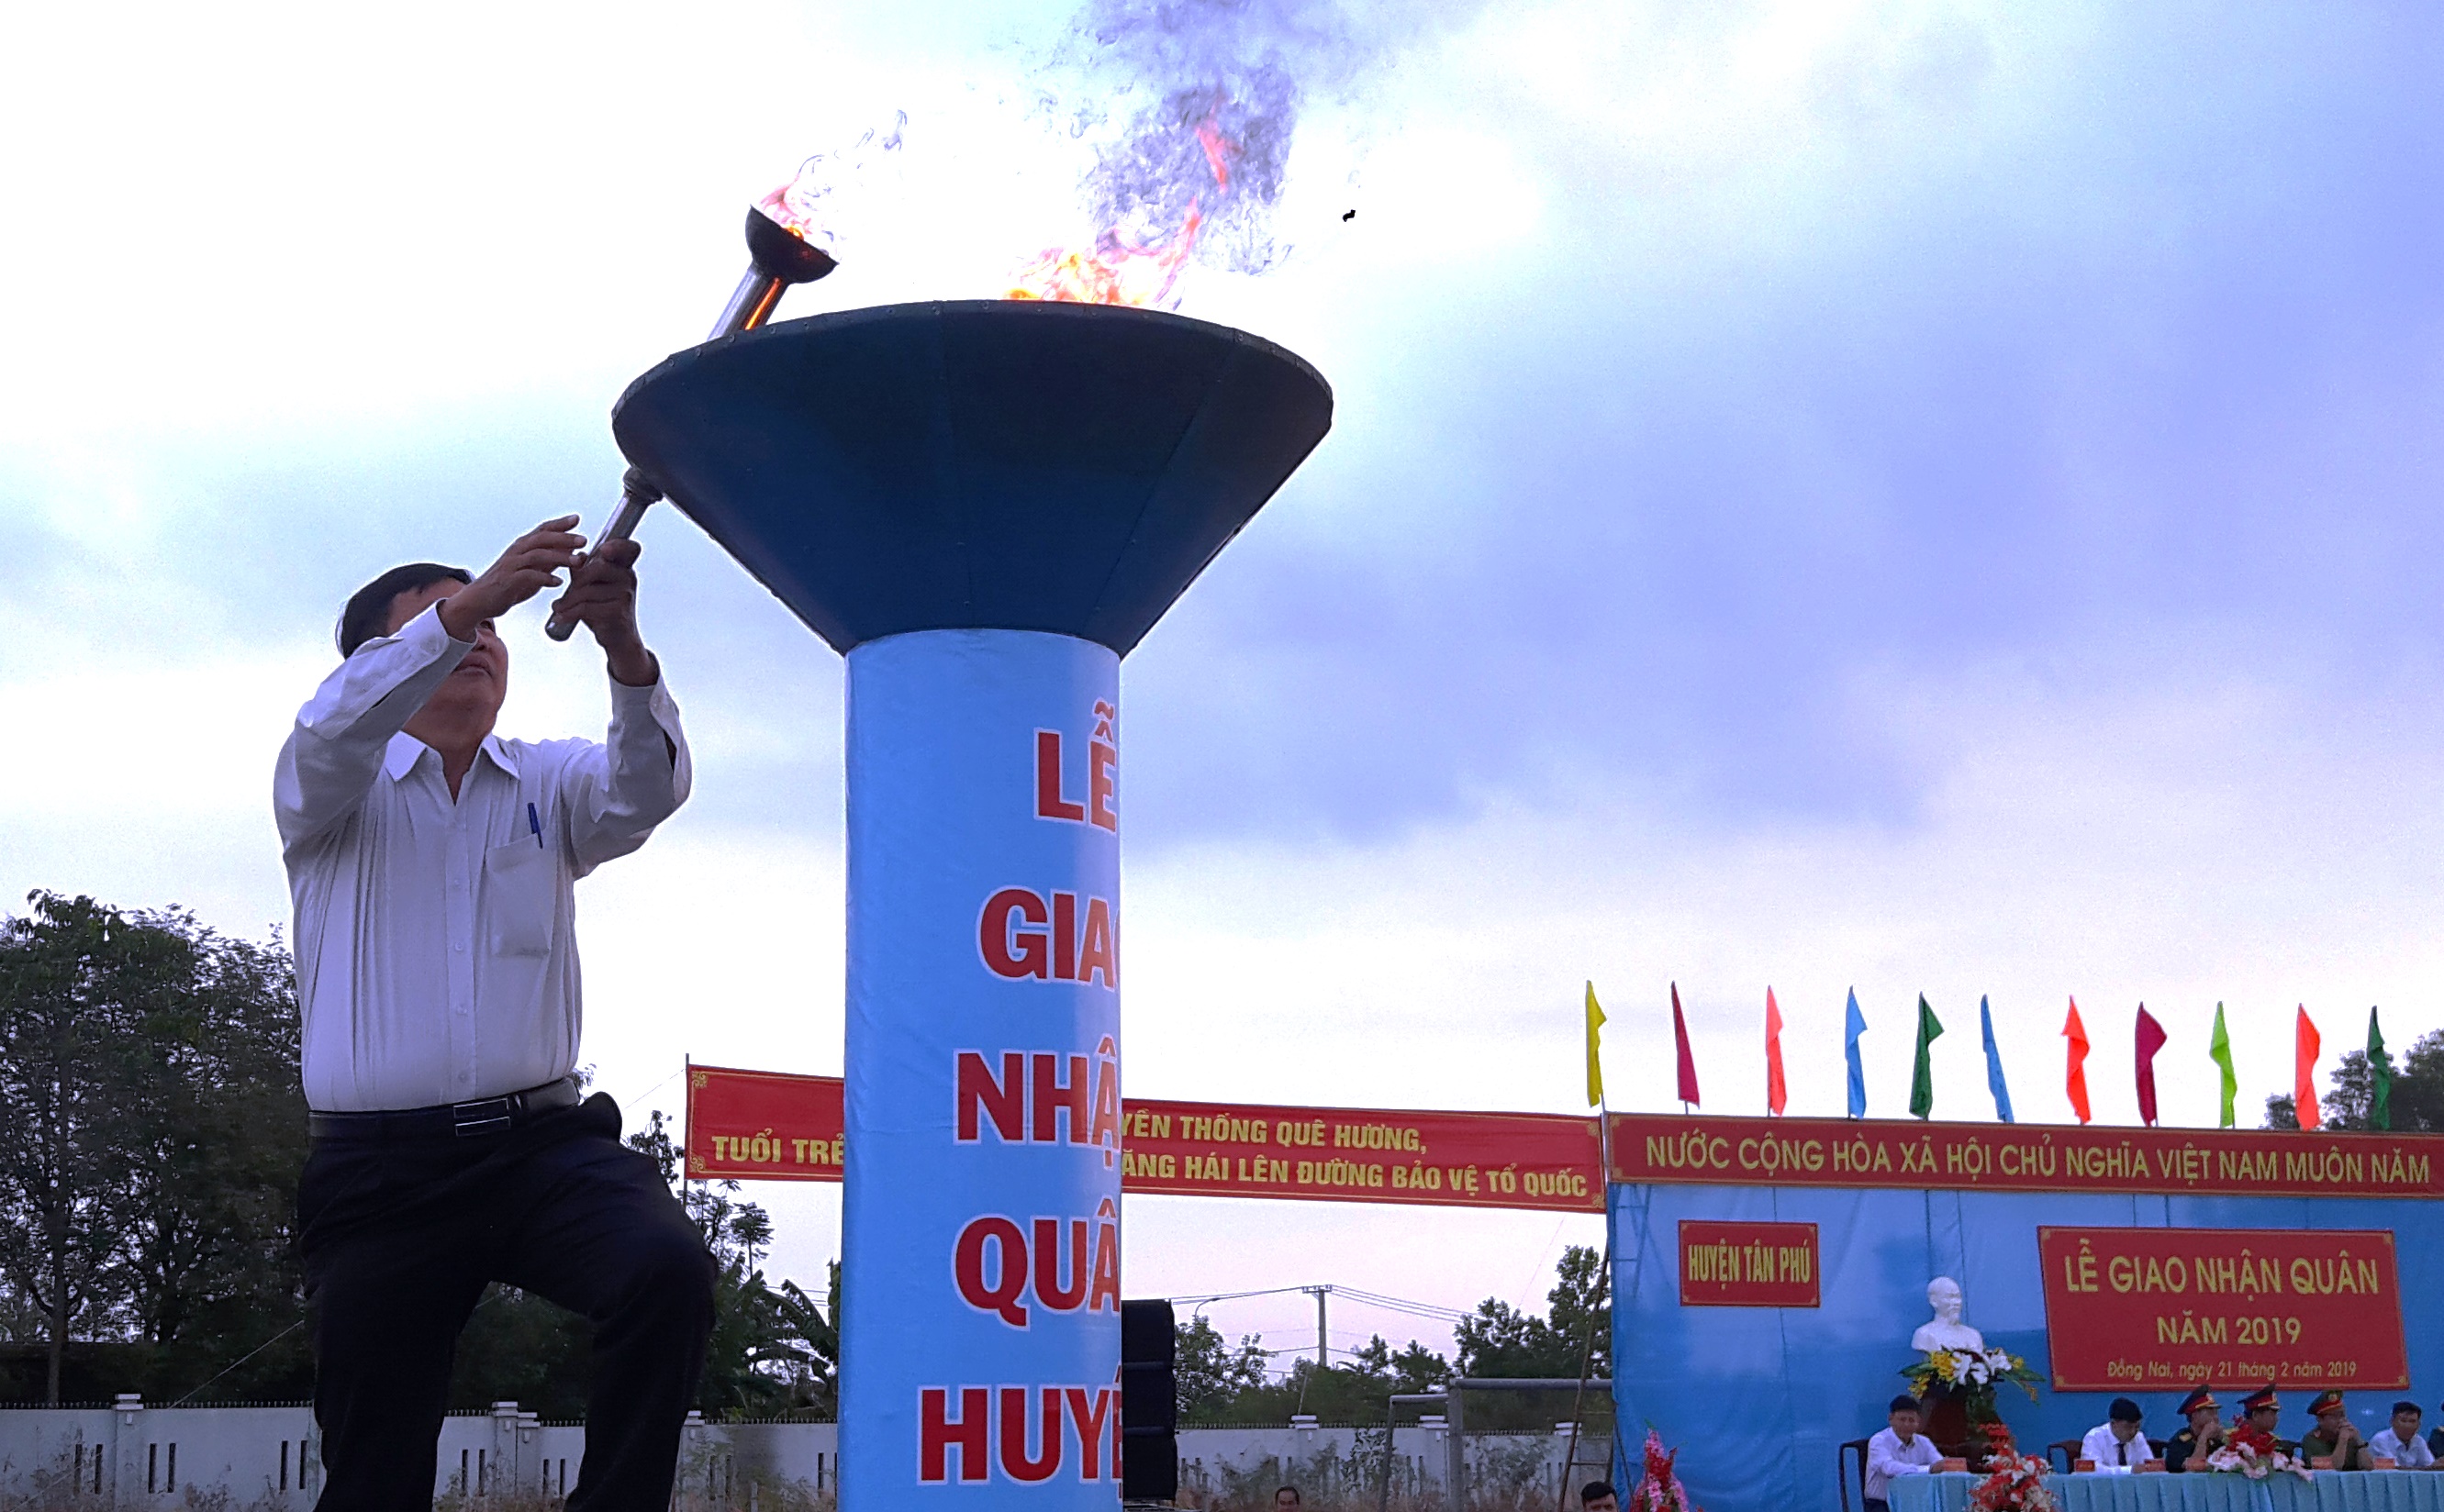 Bí thư Huyện ủy - Chủ tịch HĐND huyện, Trần Bá Đạt thắp sáng đài lửa truyền thống tại lễ giao nhận quân năm 2019.jpg